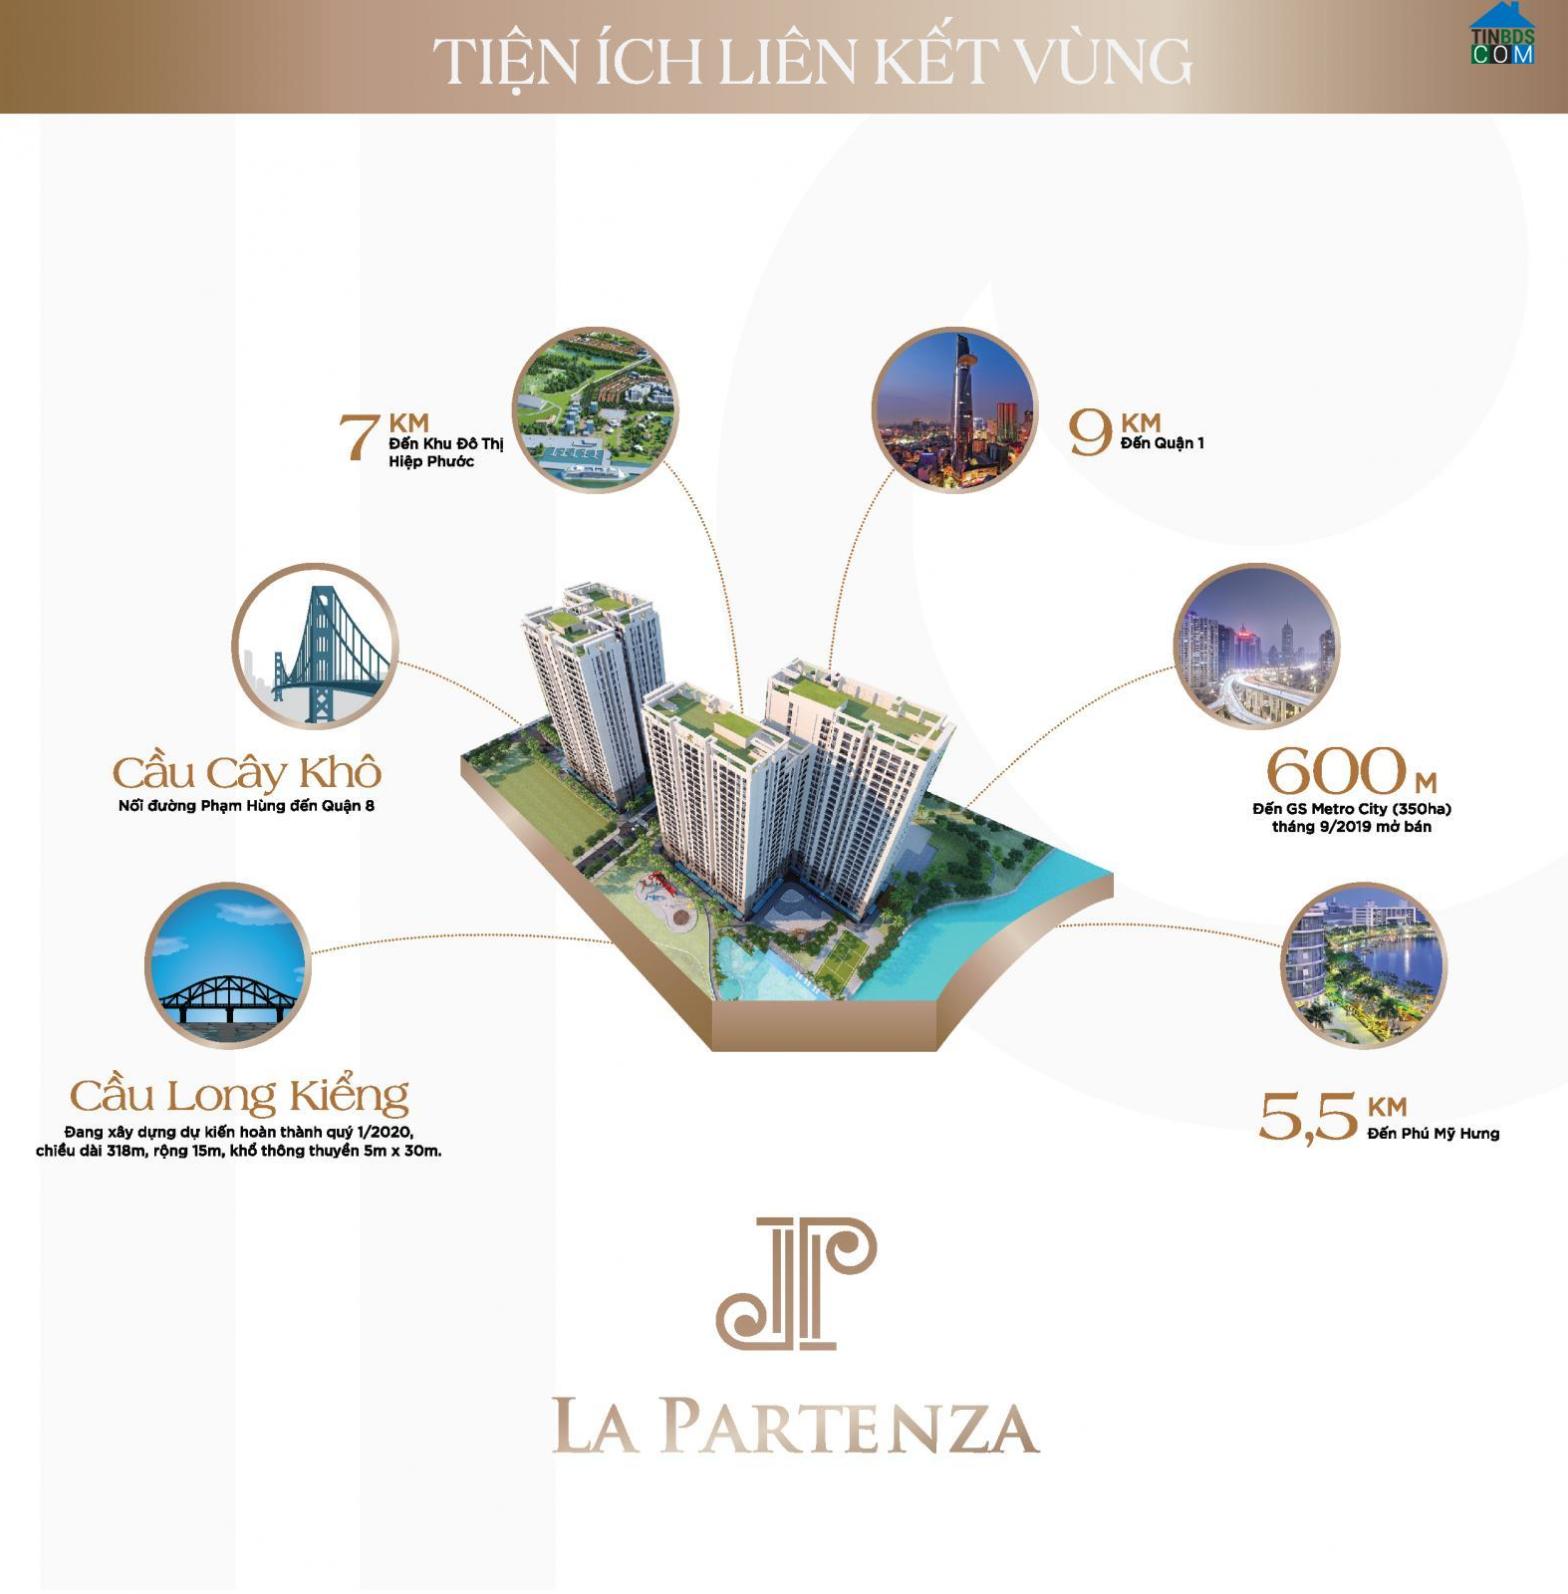 Liên kết tiện ích dự án La Partenza